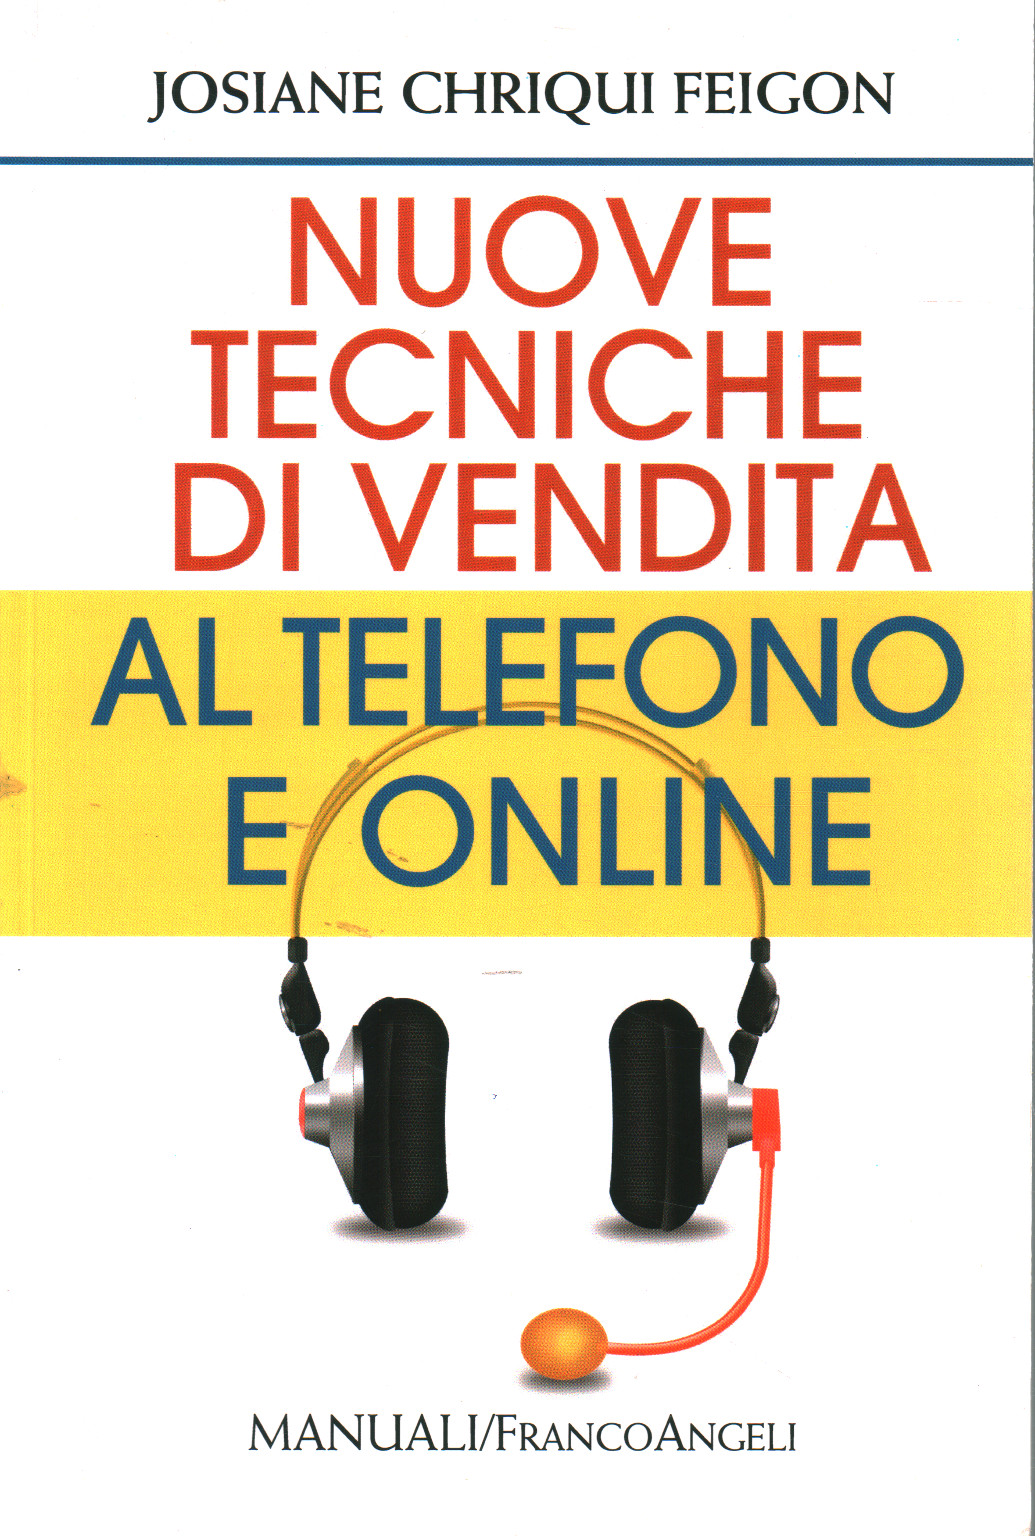 Nuove tecniche di vendita al telefono e online, Josiane Chriqui Feigon